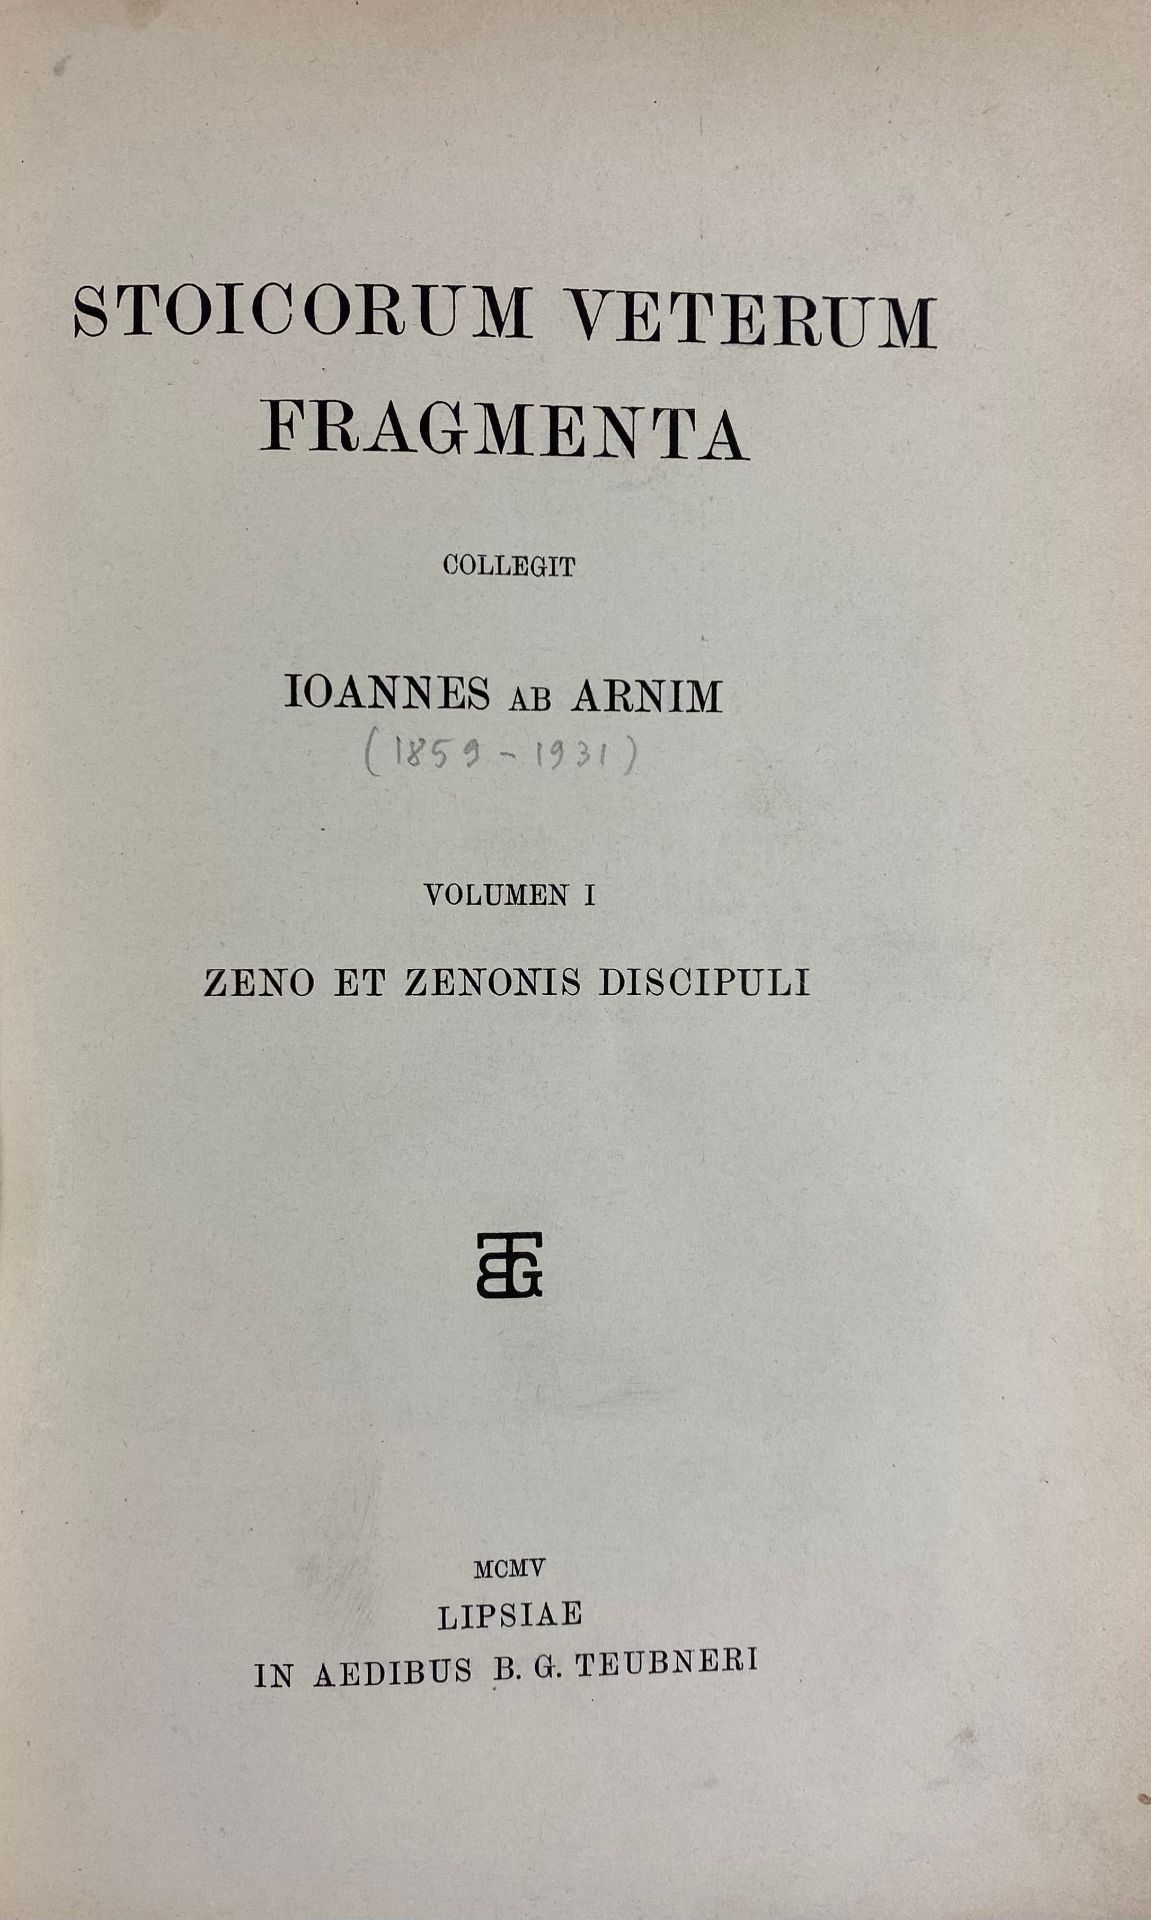 STOICORUM VETERUM FRAGMENTA. Collegit J. ab Arnim. Vols. 1-3. Lpz., Teubner, 1903-05